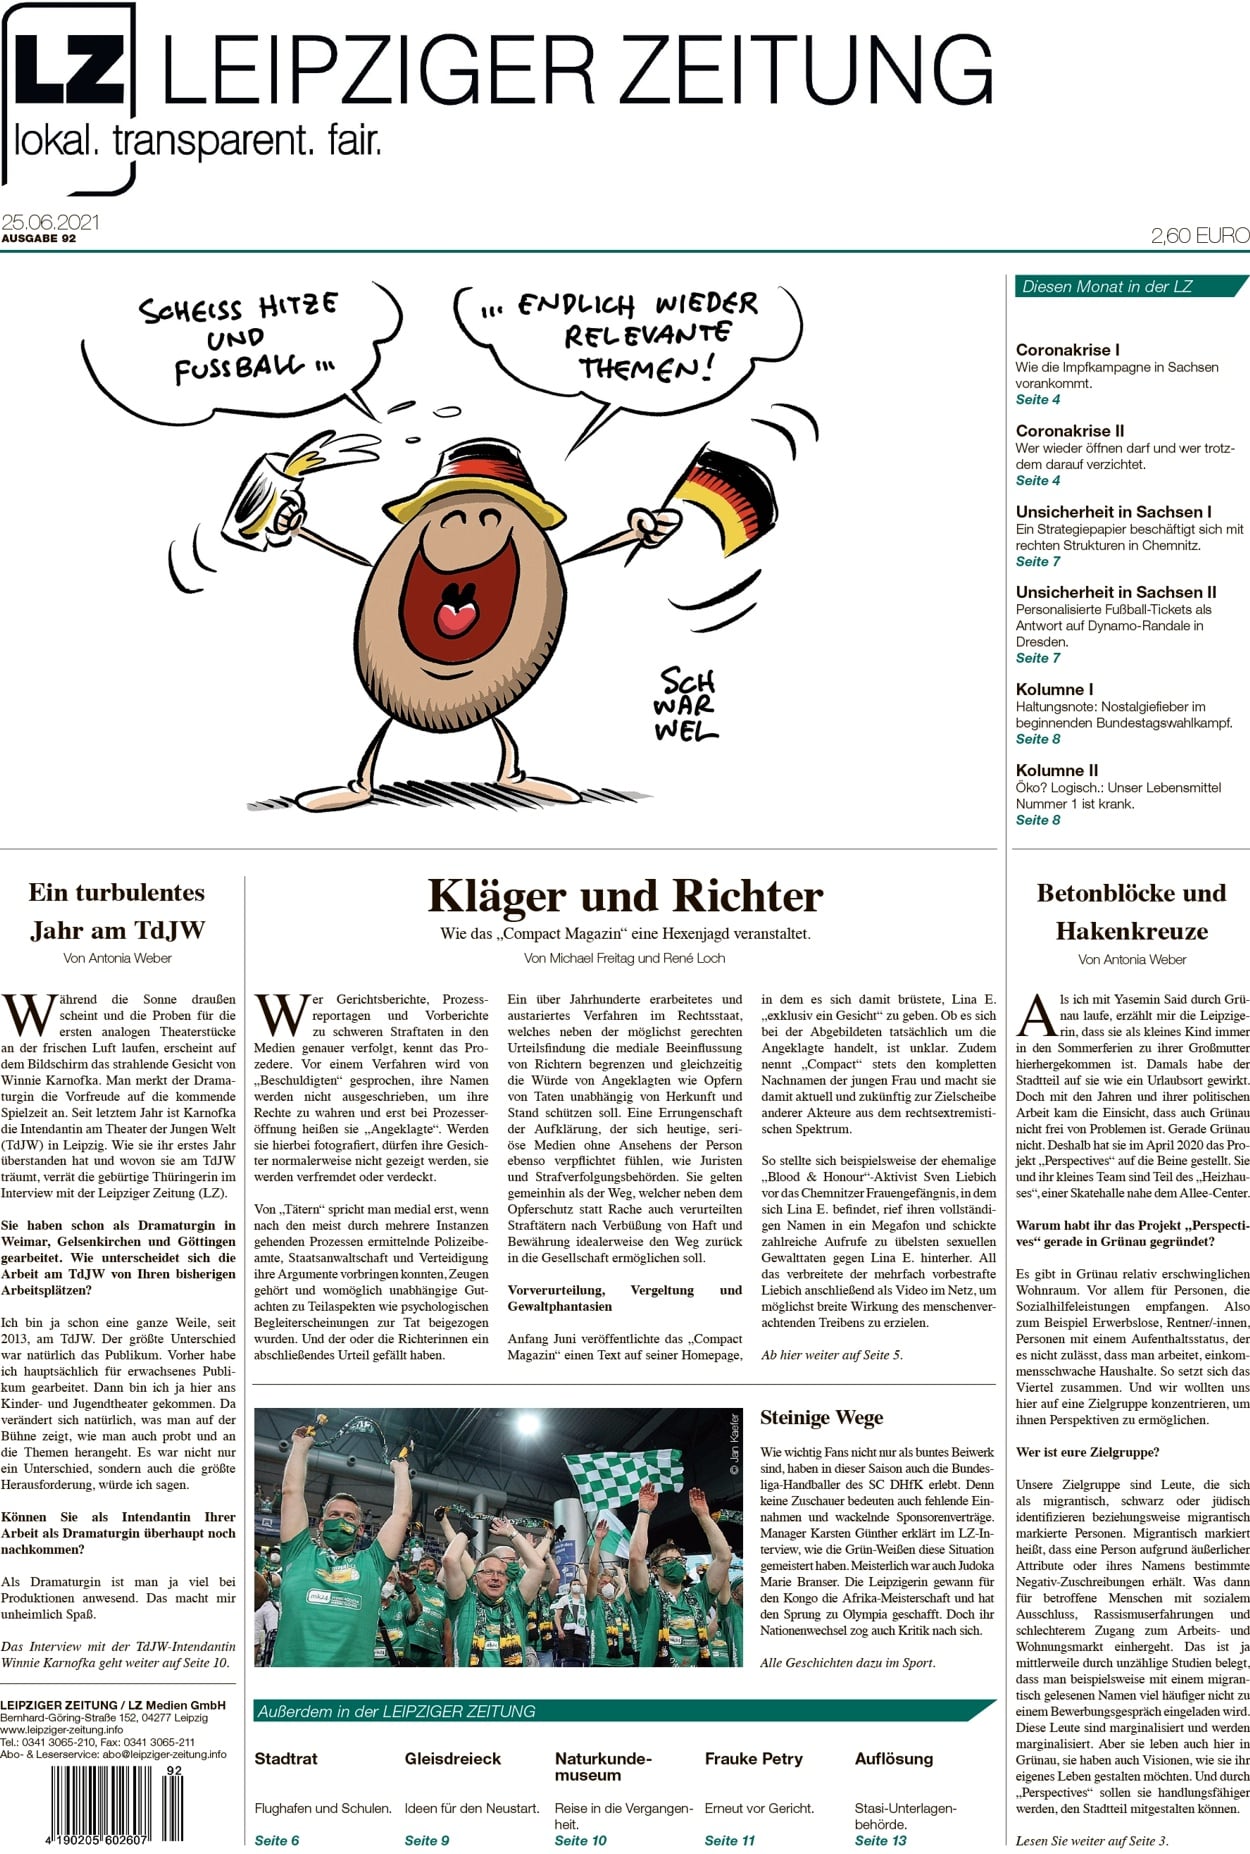 Die Leipziger Zeitung, Ausgabe 92. Seit 25. Juni 2021 im Handel. Foto: LZ